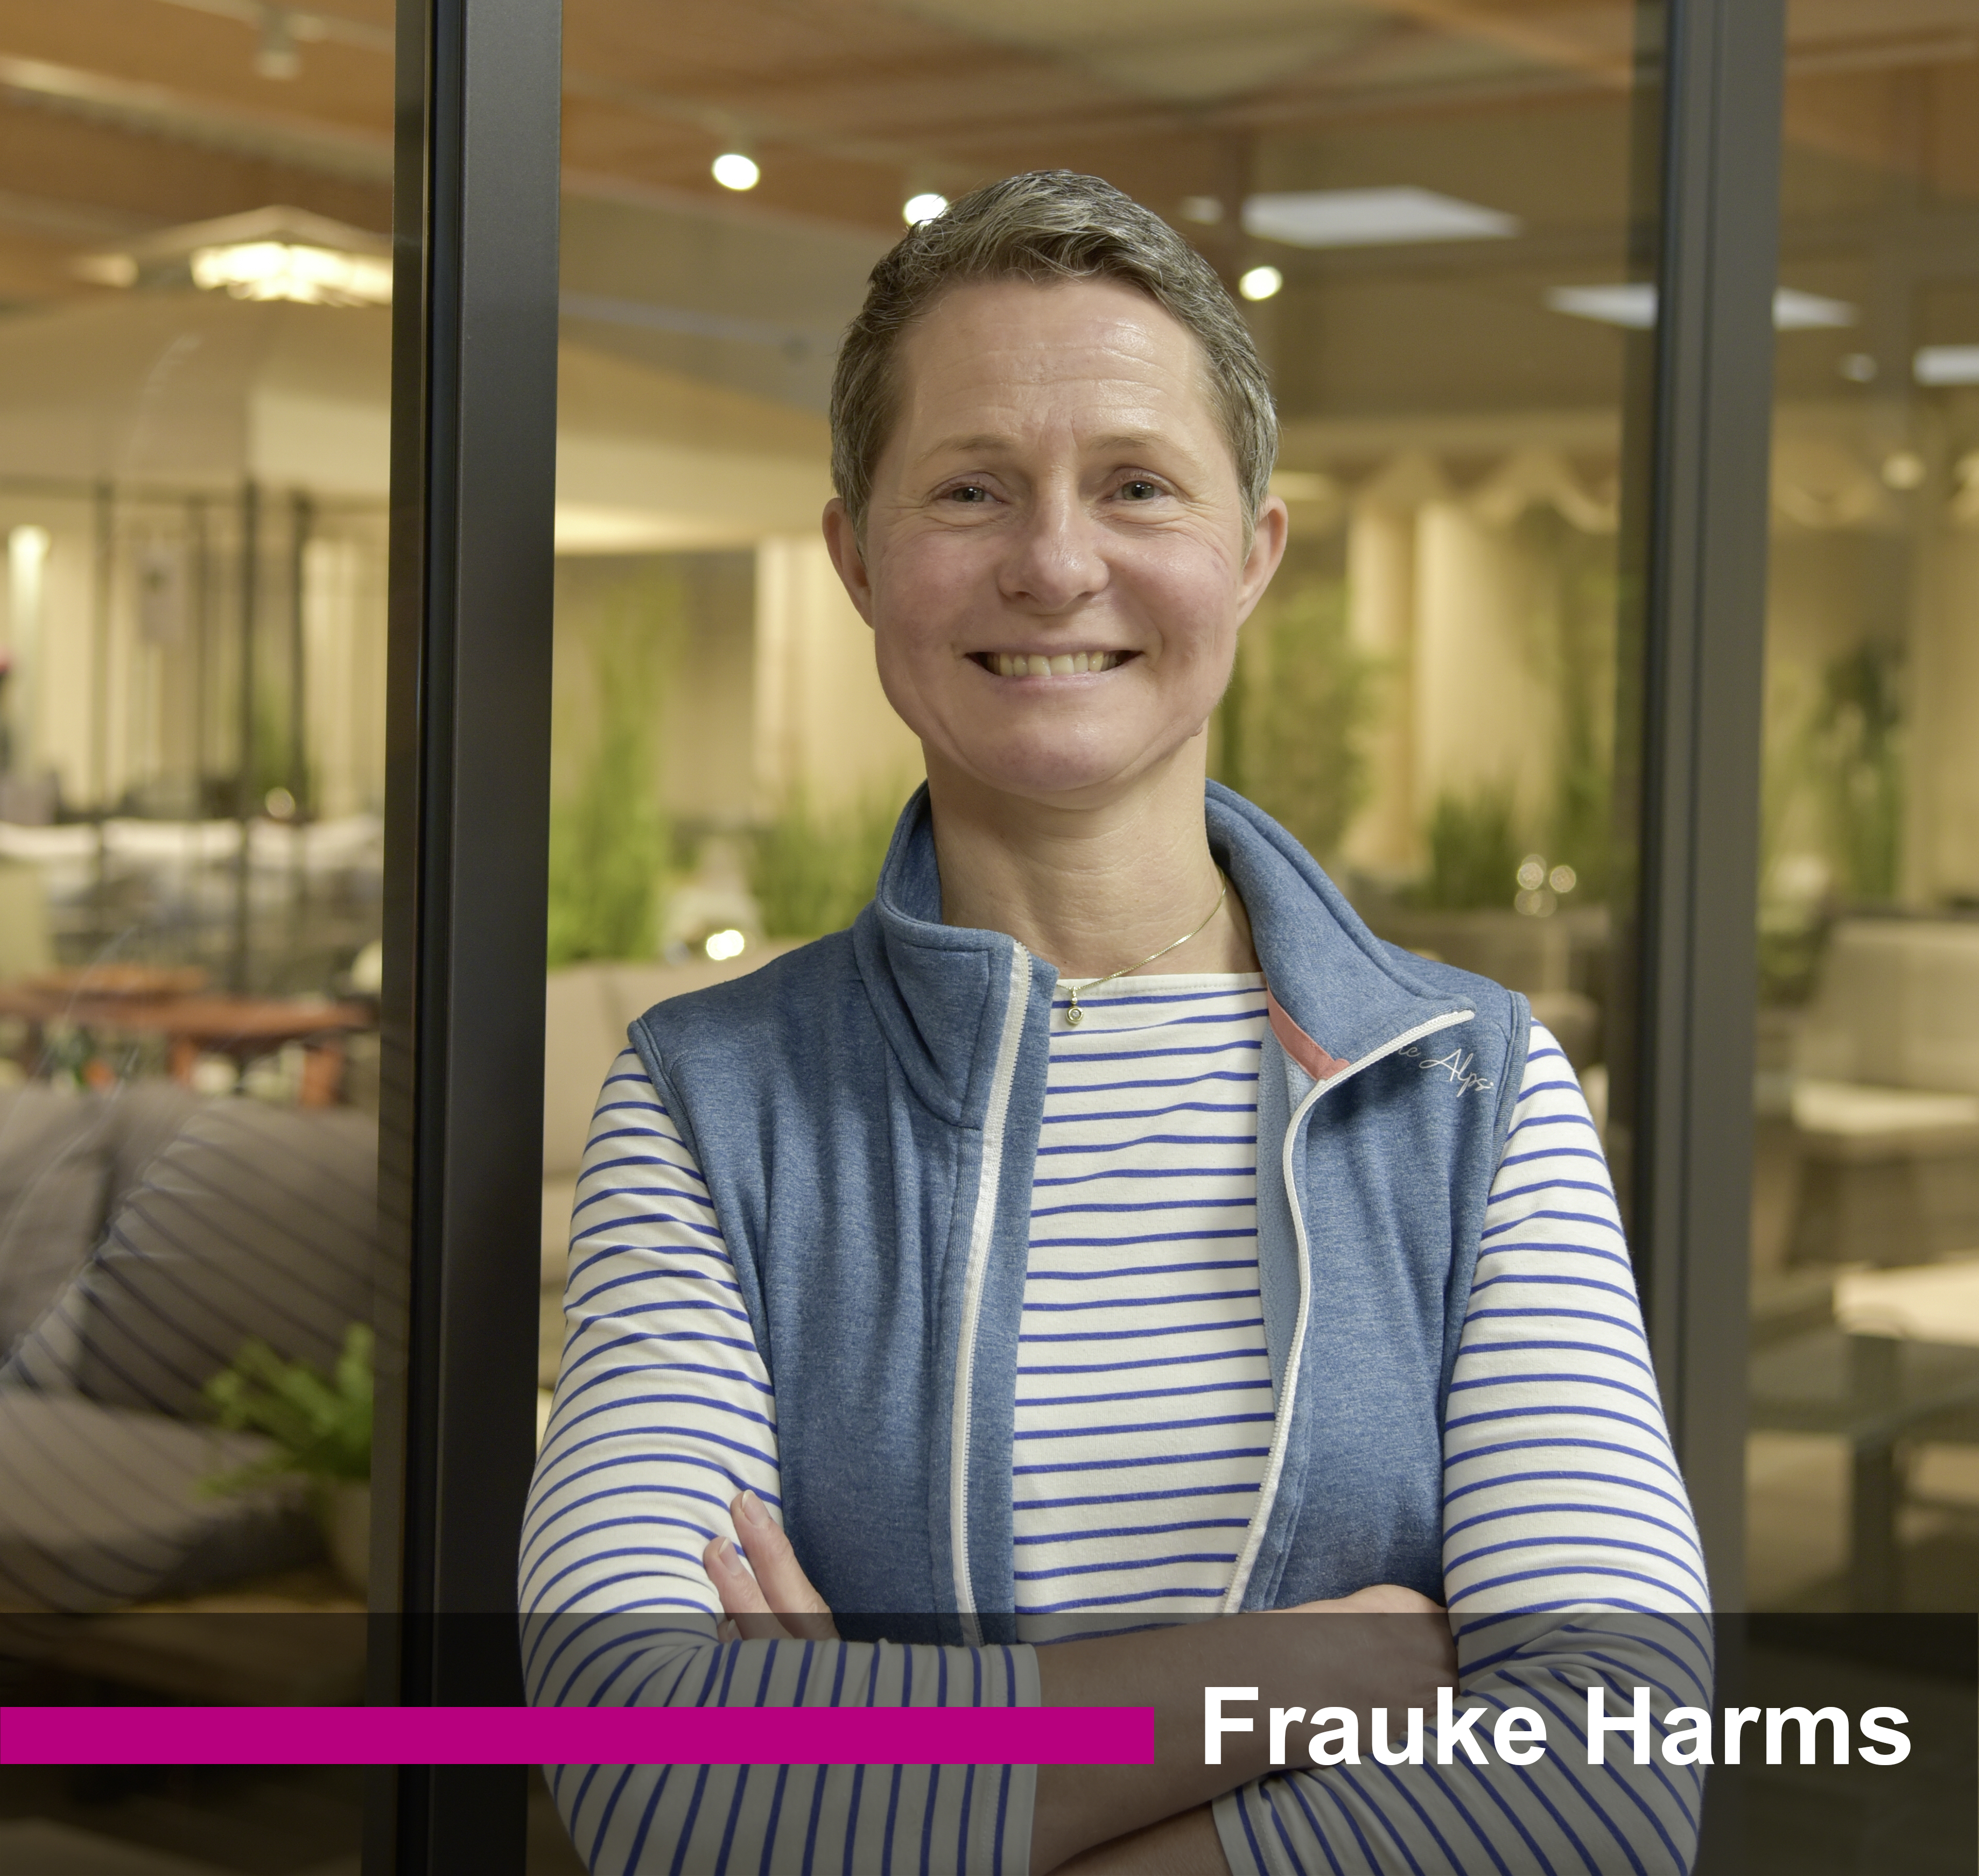 Frauke Harms